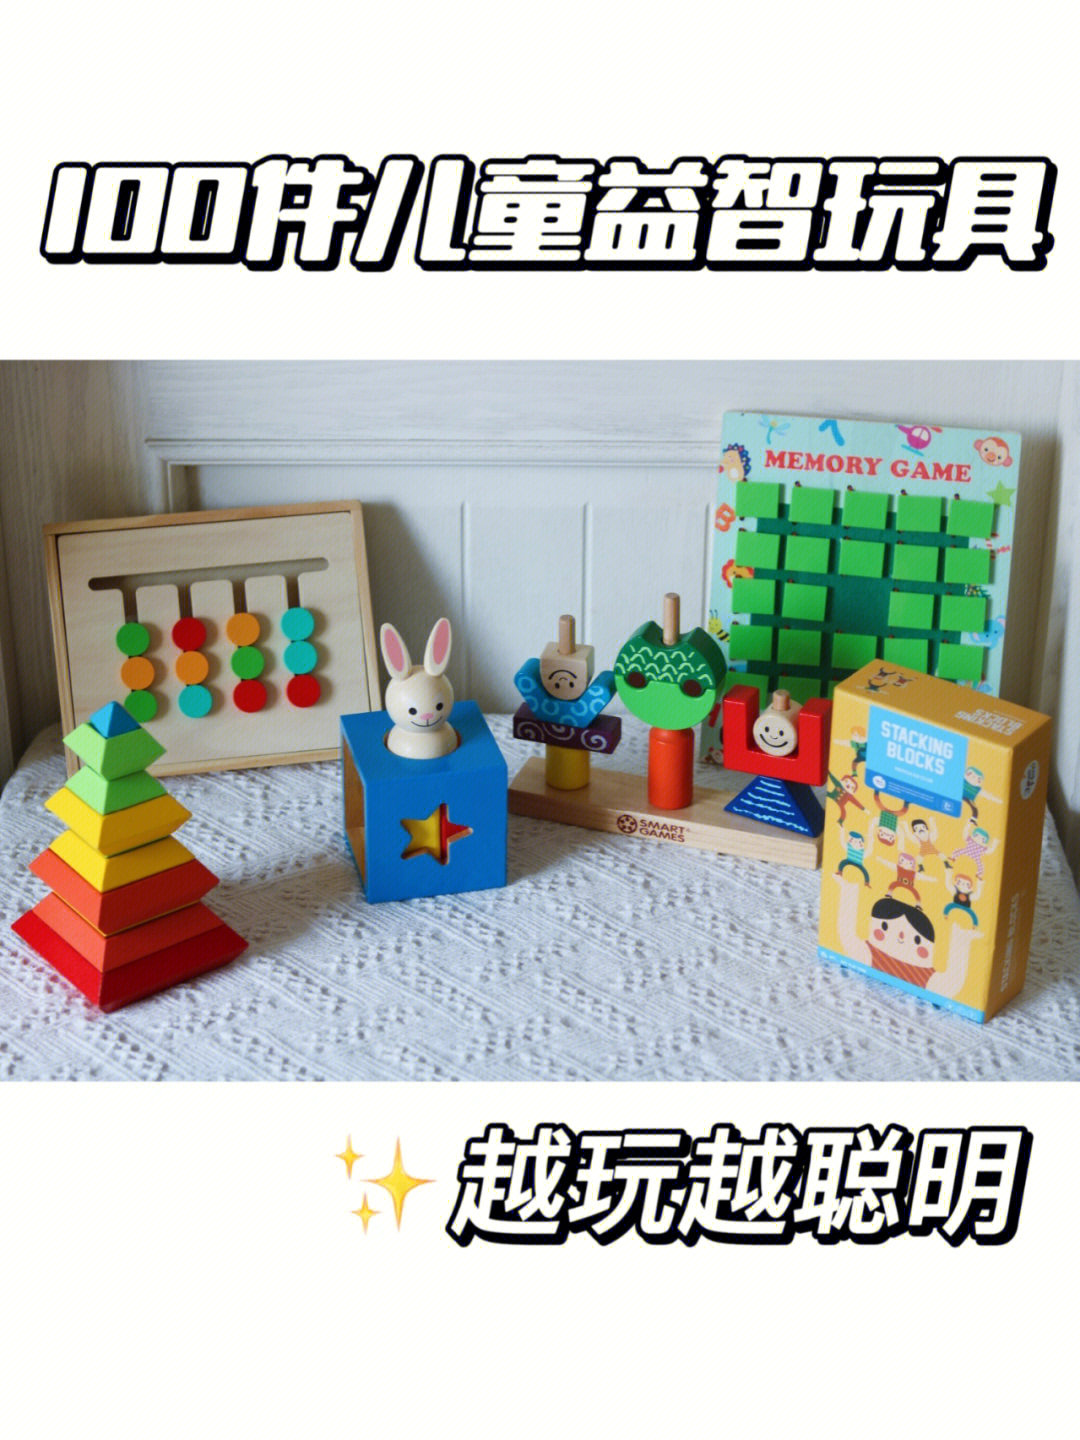 益智玩具,大家可以参考下哈94兔宝宝魔方盒96玩法:和小白兔捉迷藏